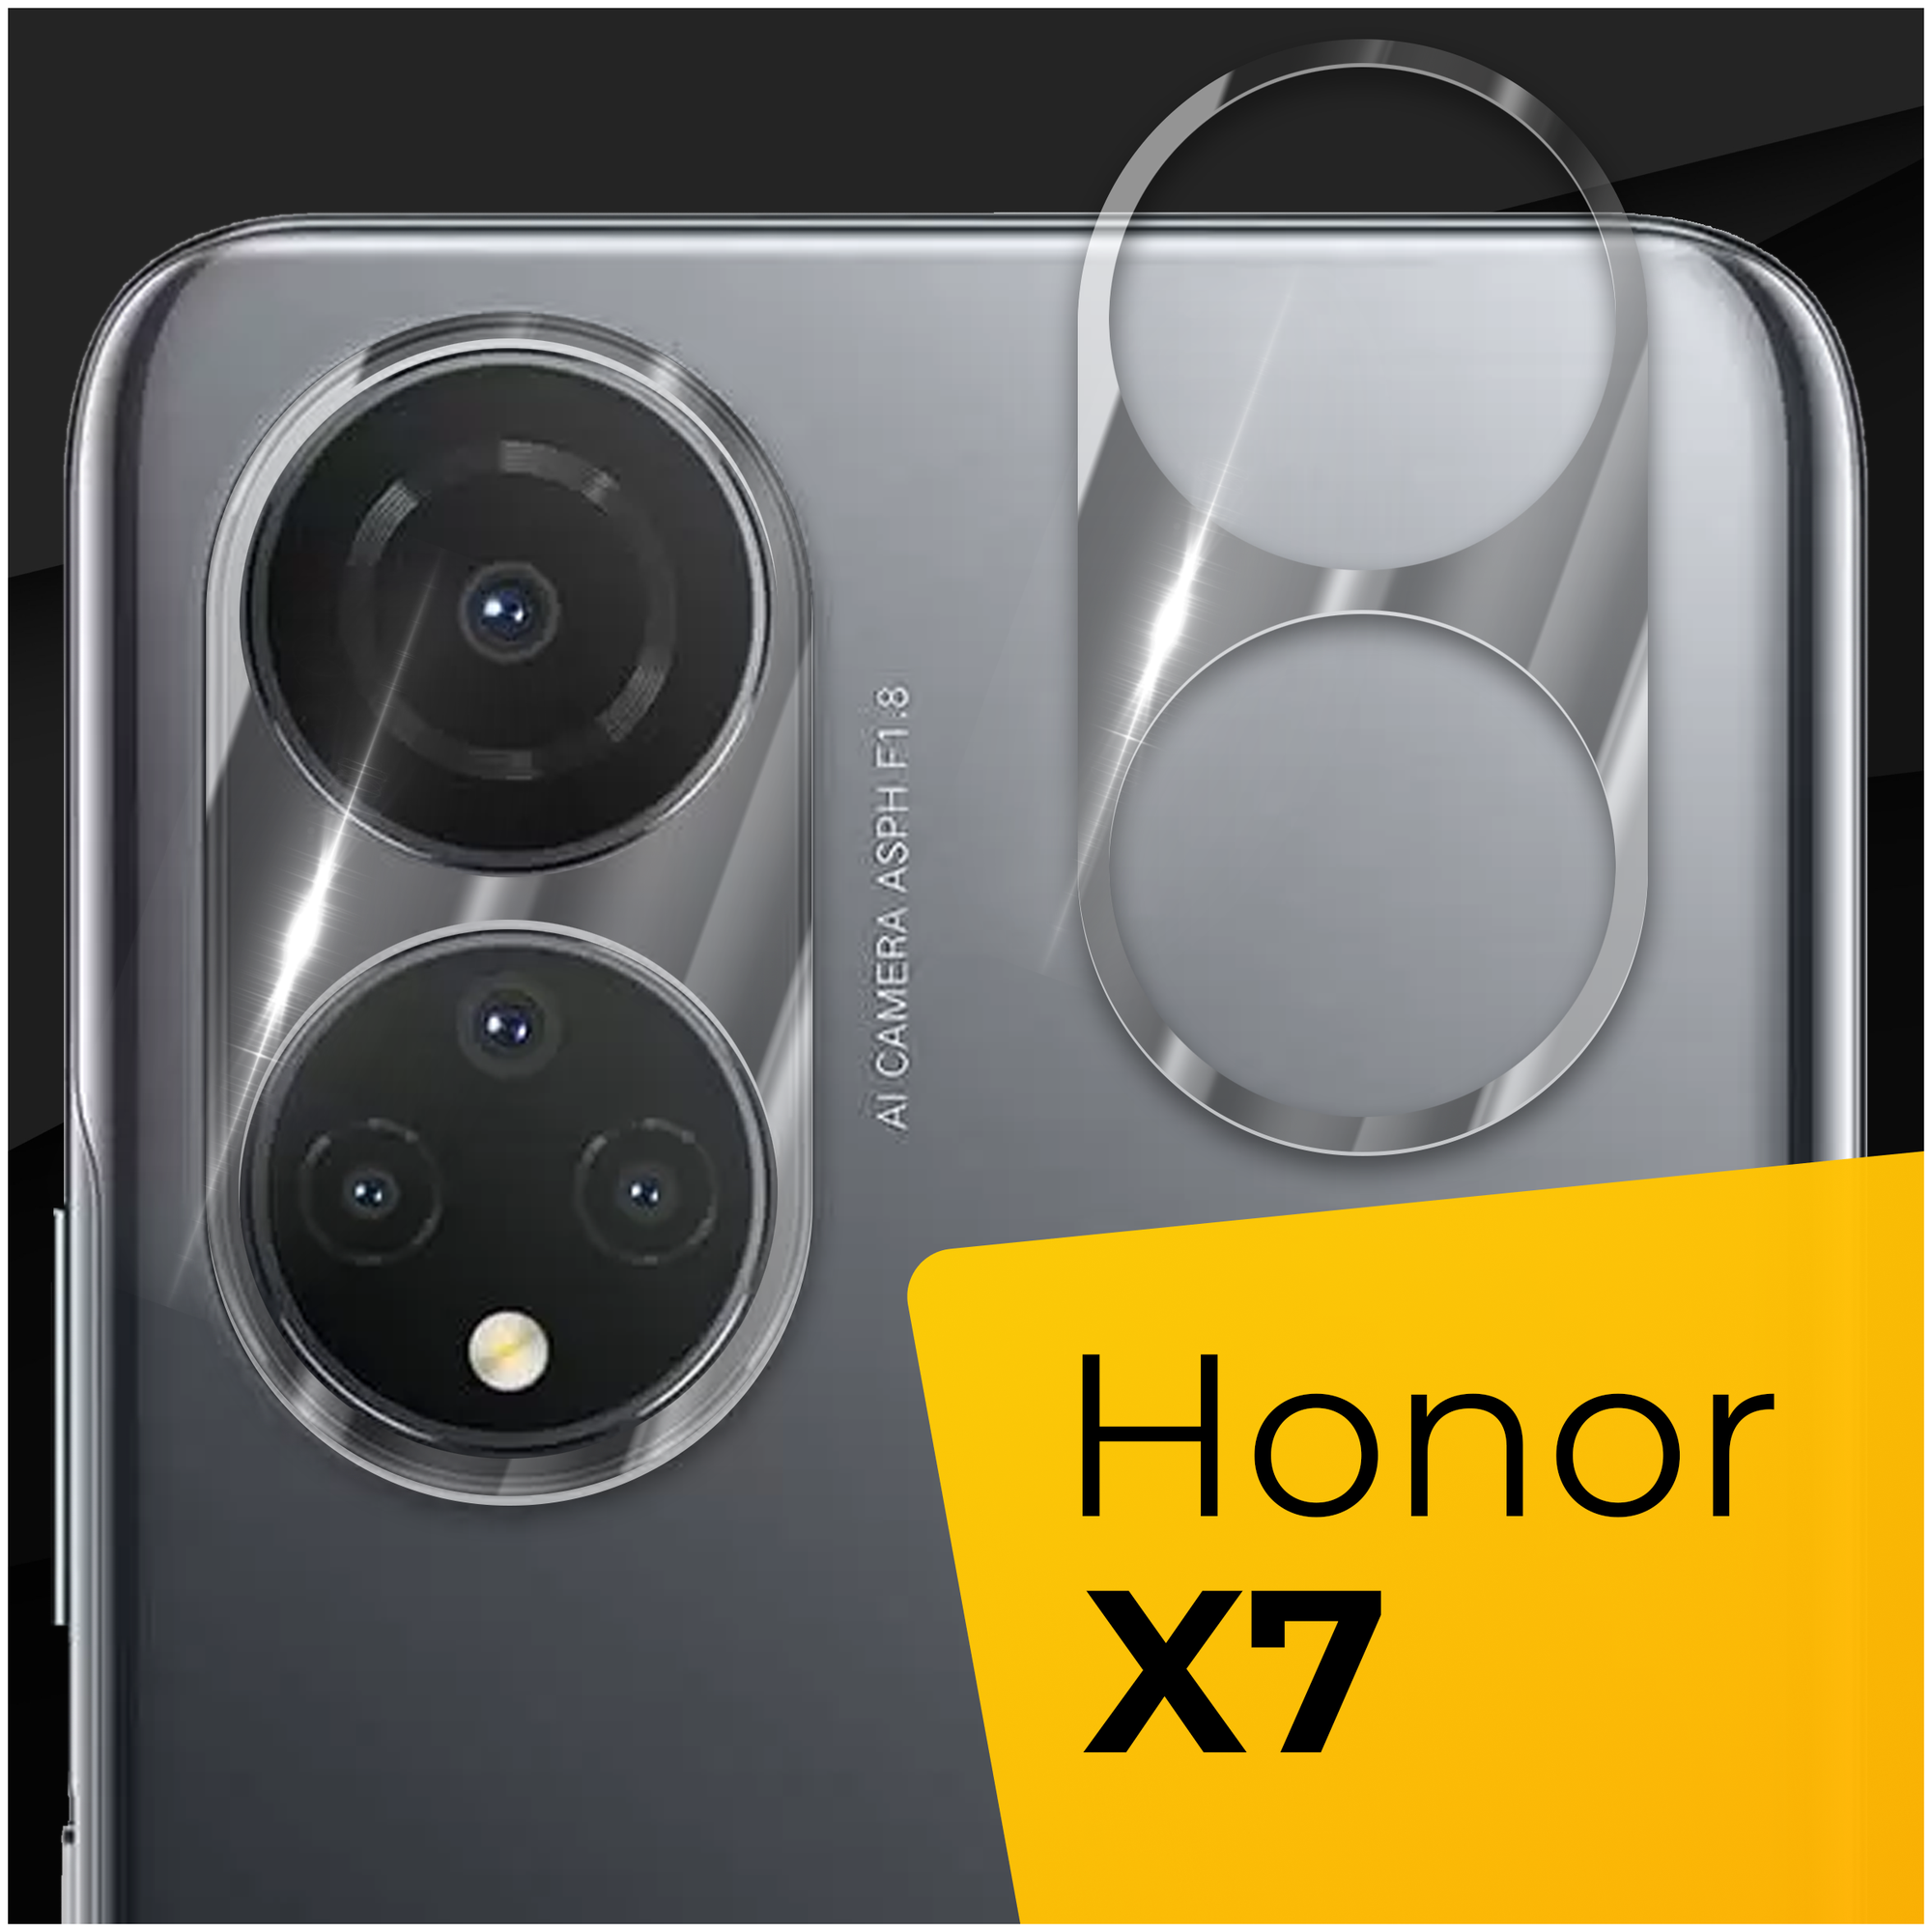 Противоударное защитное стекло для камеры телефона Huawei Honor X7 / Тонкое прозрачное стекло на камеру смартфона Хуавей Хонор Х7 / Защита камеры